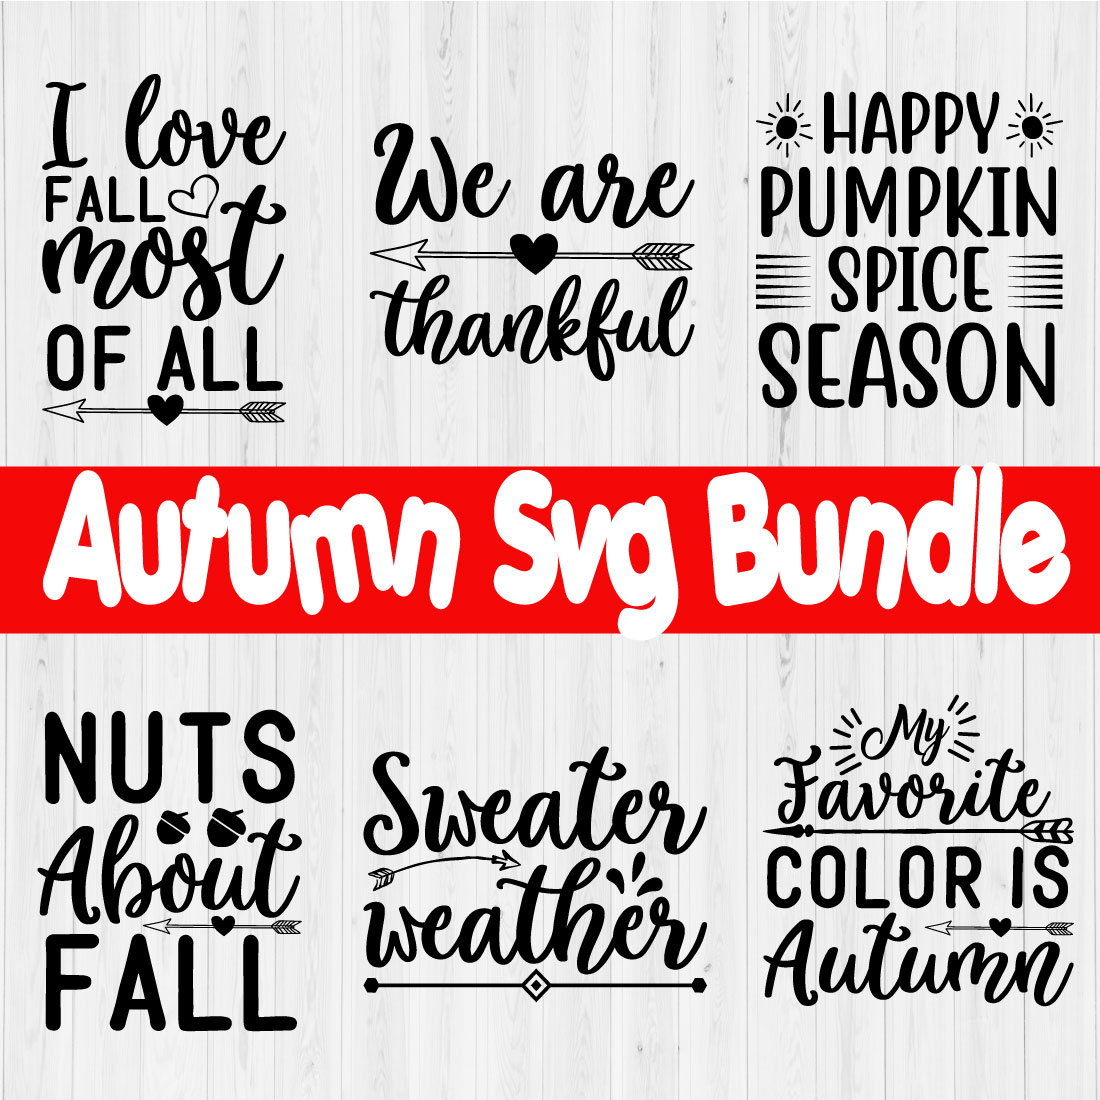 Autumn Svg Design Bundle Vol2 cover image.